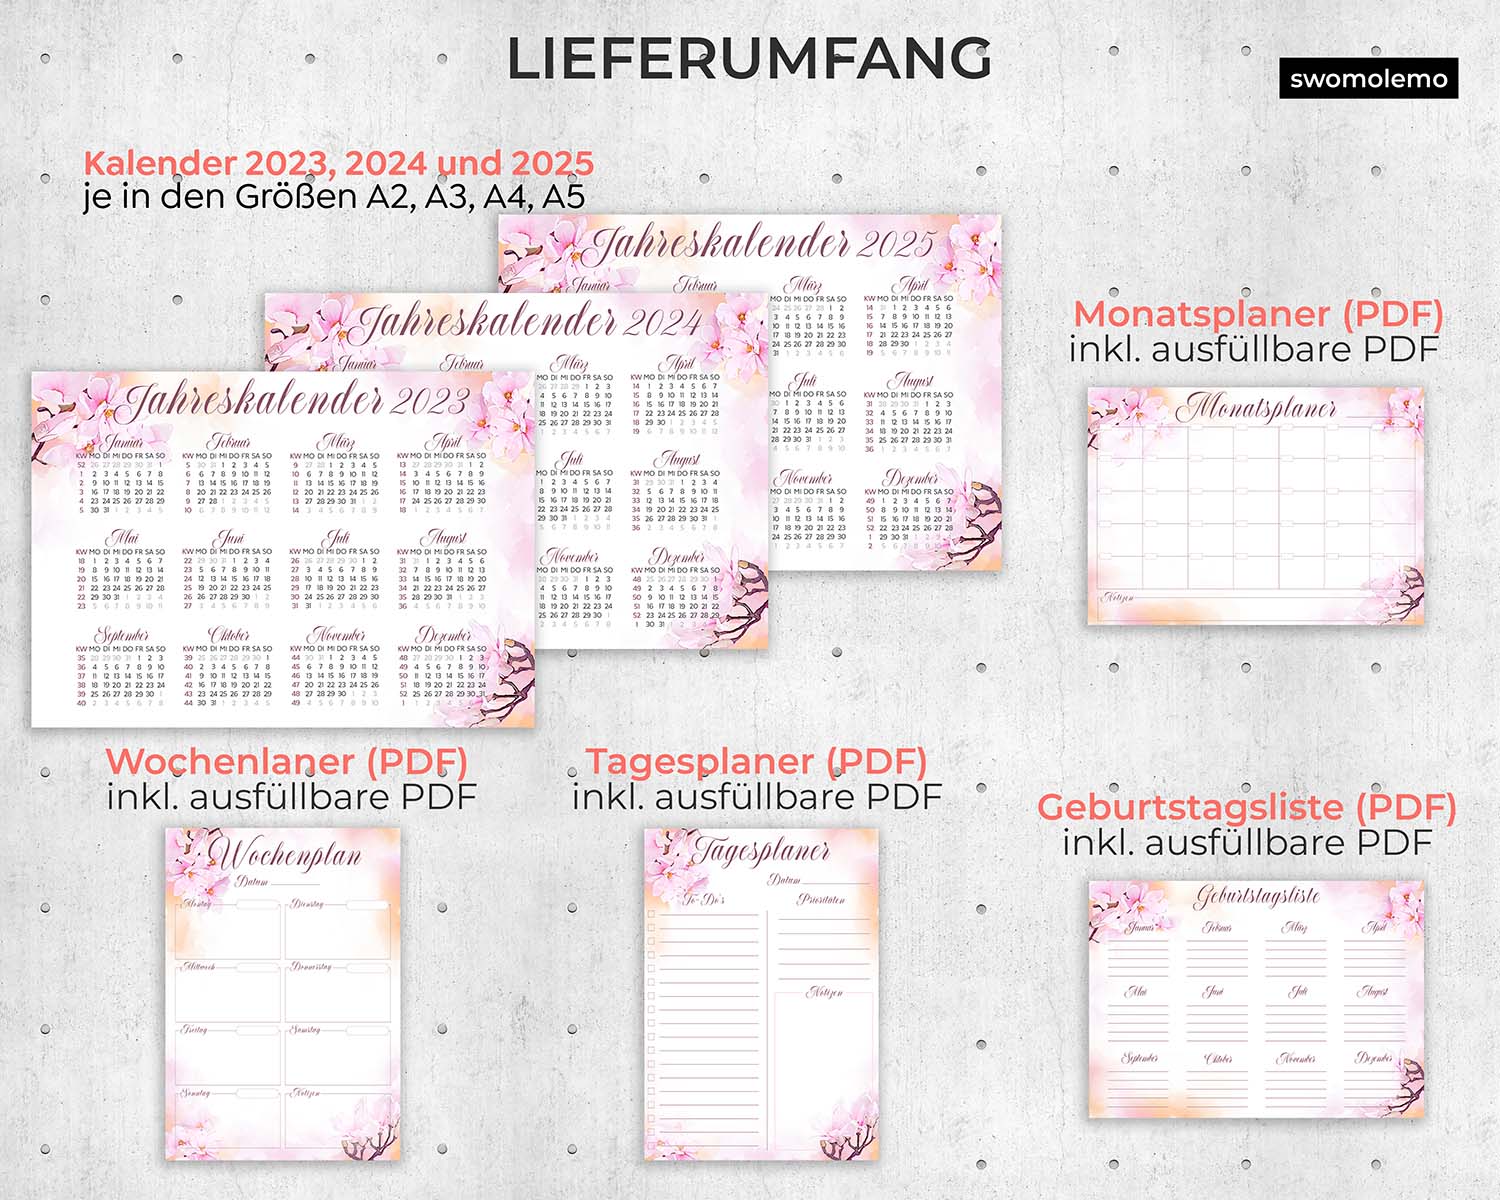 2023-Kalender-Organizer-Planer-Tagesplaner-Wochenplaner-Geburtstagsliste-Download